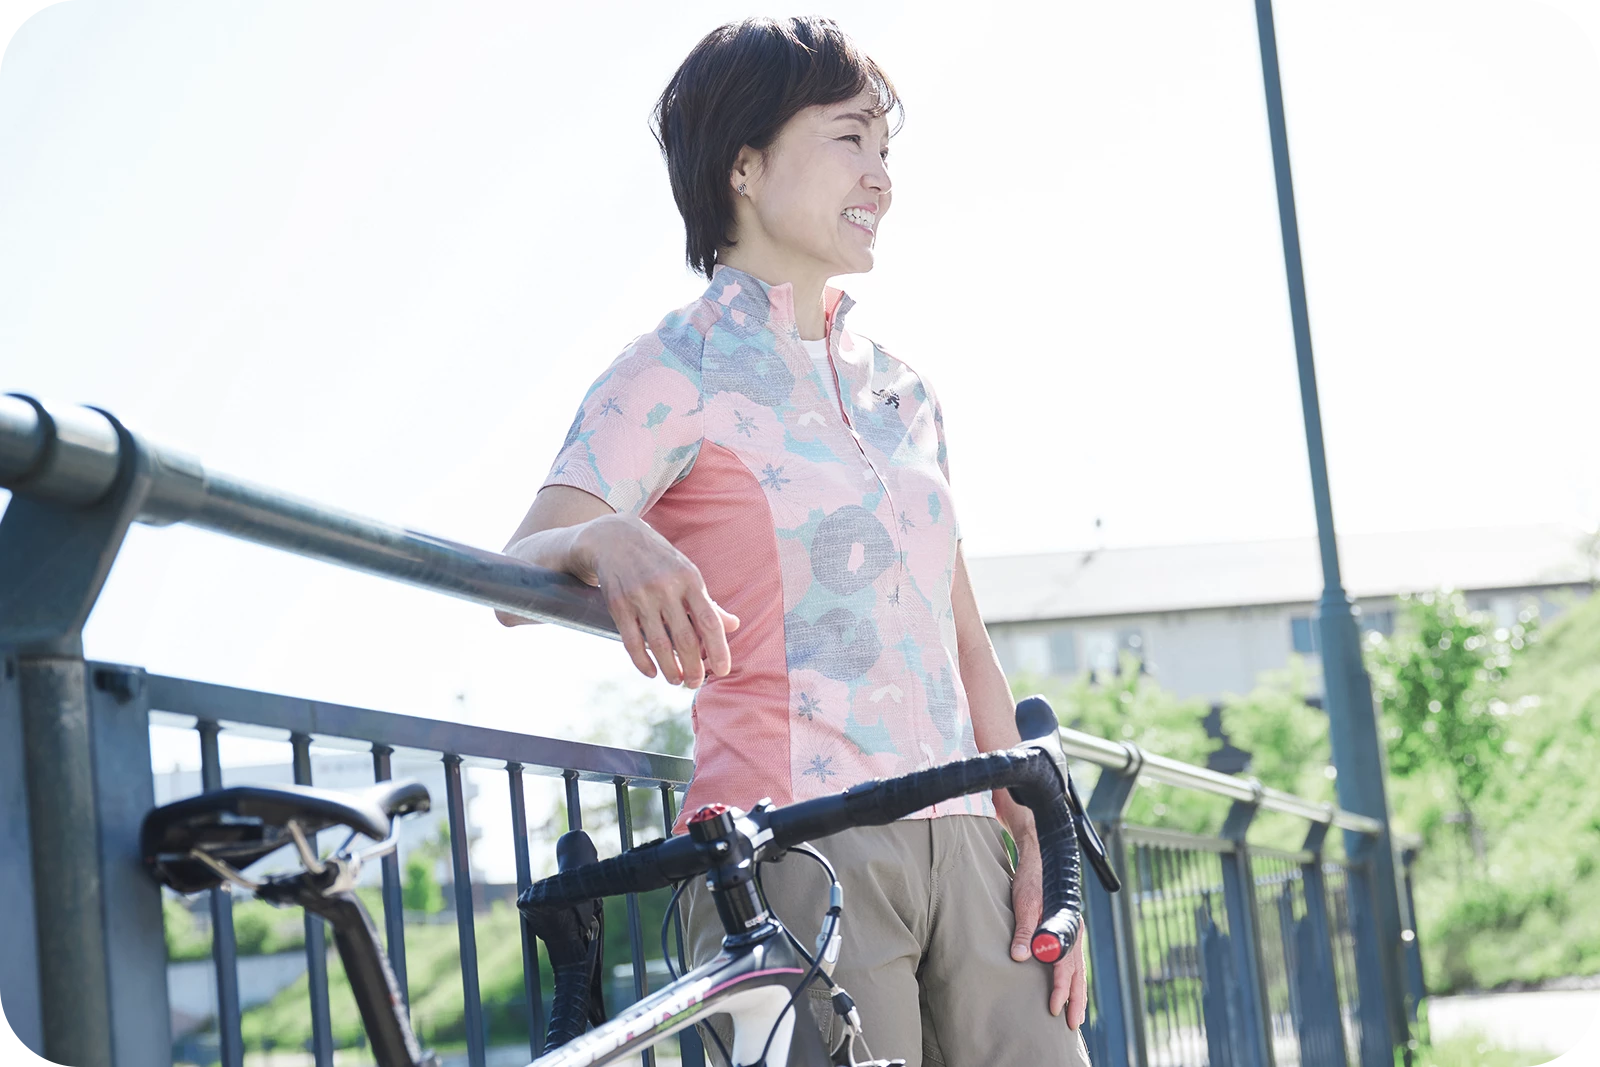 引退後も自転車を楽しみ続けている高松美代子さん。